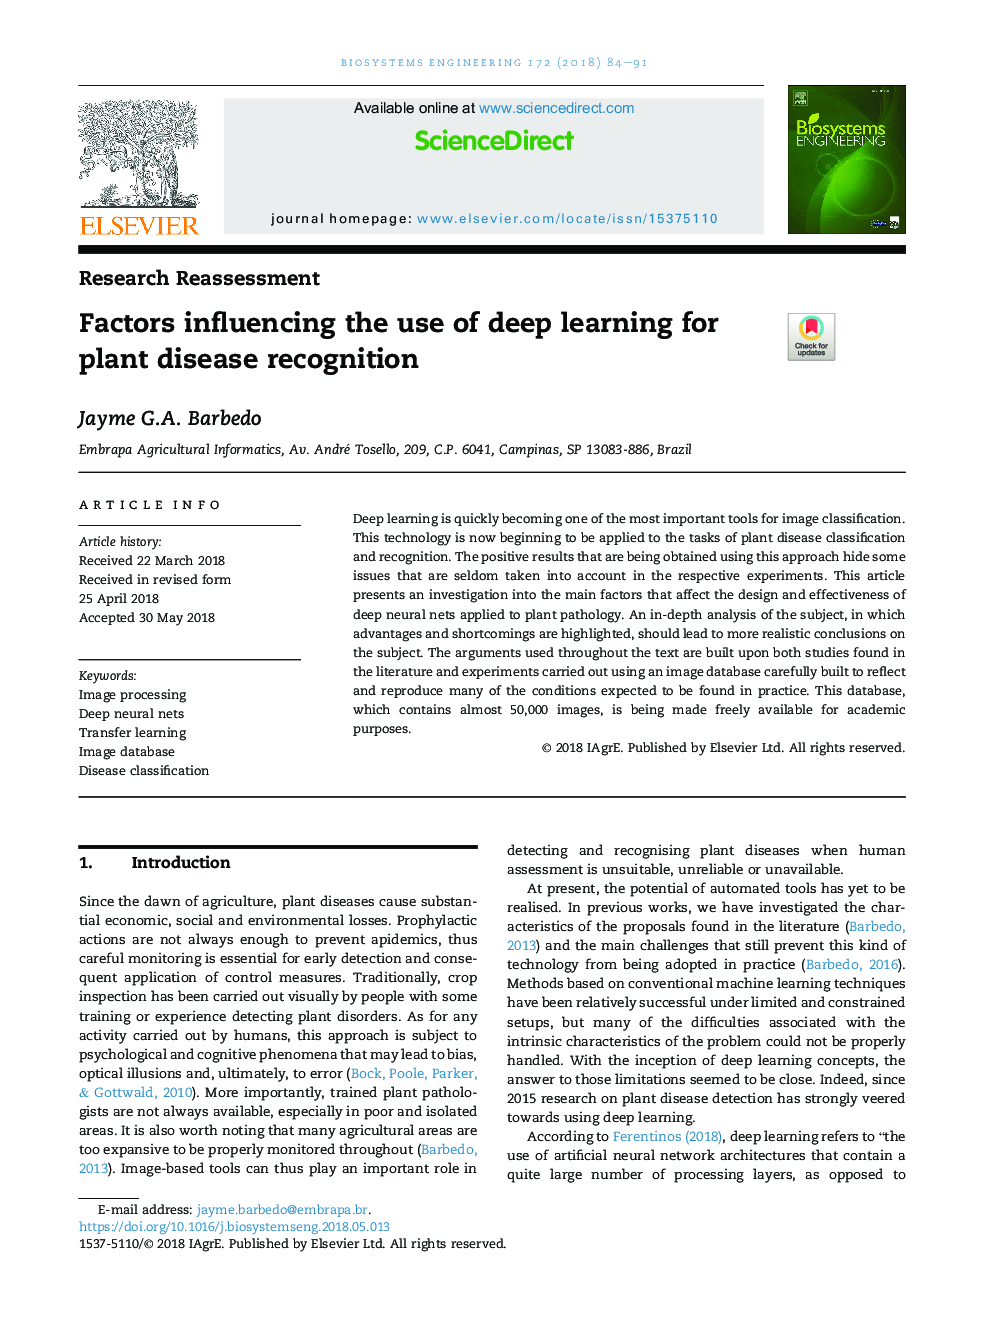 عوامل موثر بر استفاده از یادگیری عمیق برای شناسایی بیماری های گیاهی 